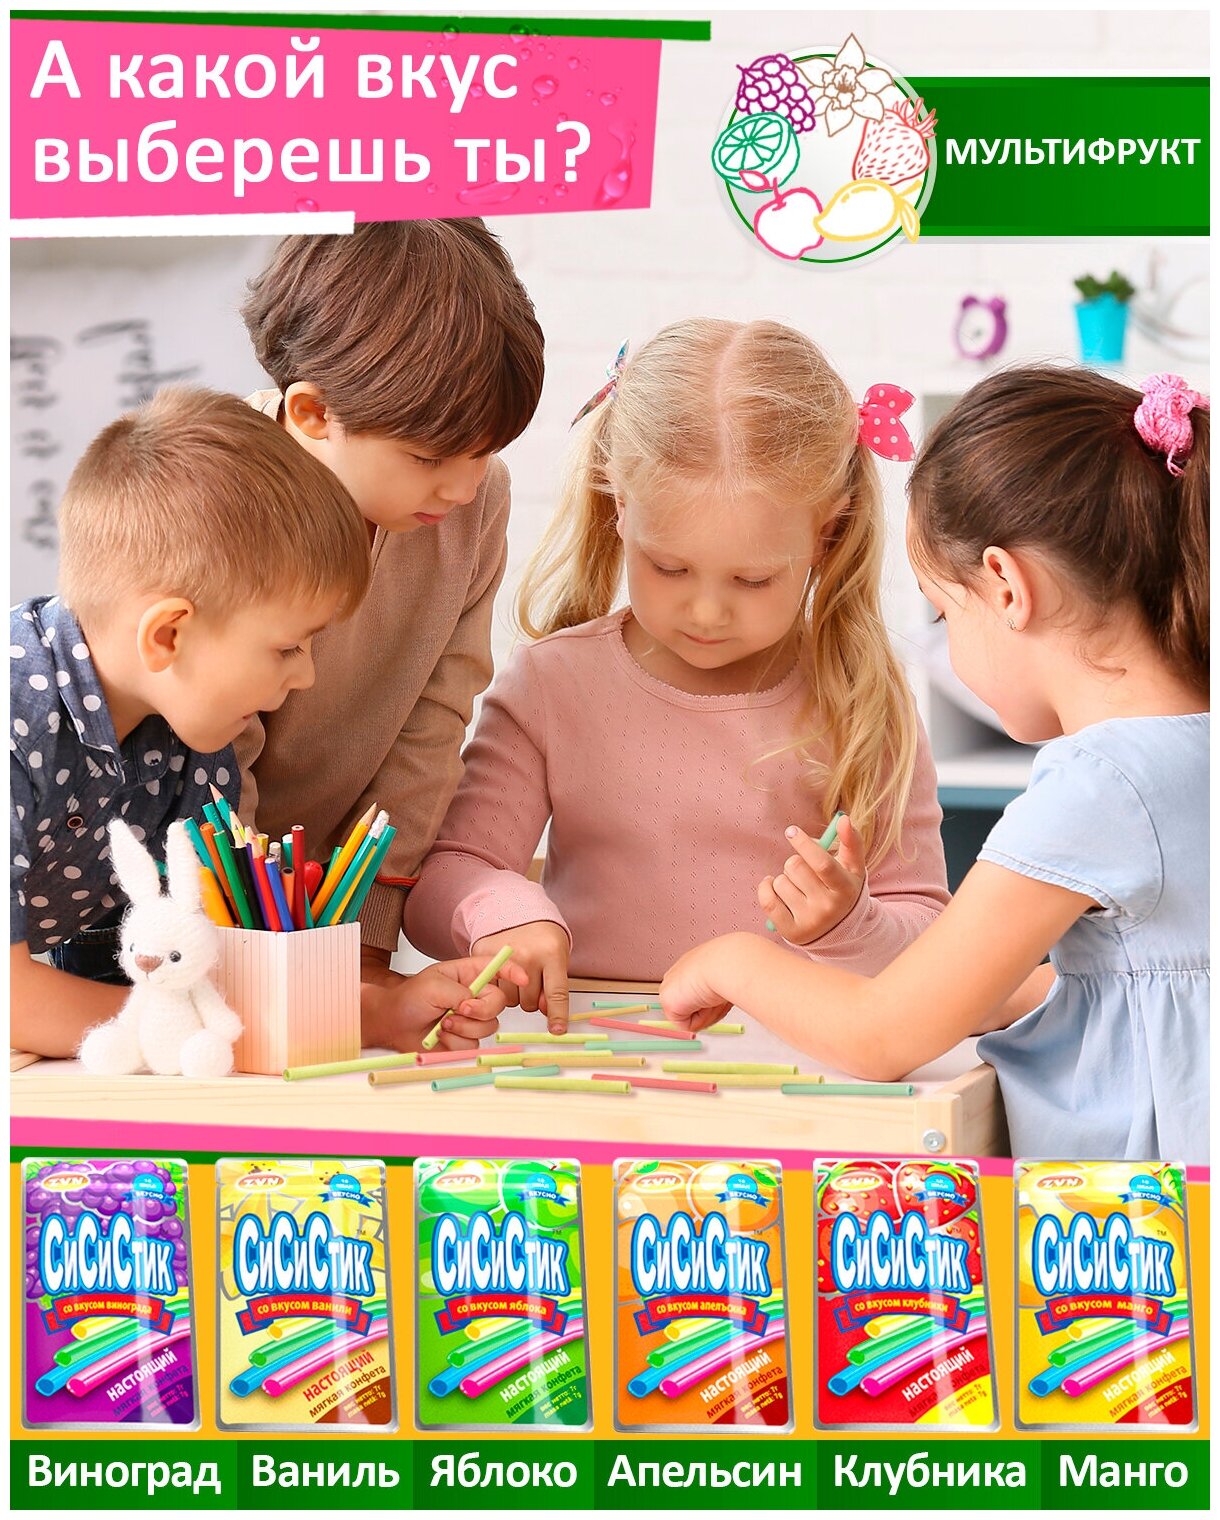 Мягкие конфеты СиСиСтик в соломинках, мультифруктовый микс - фотография № 9